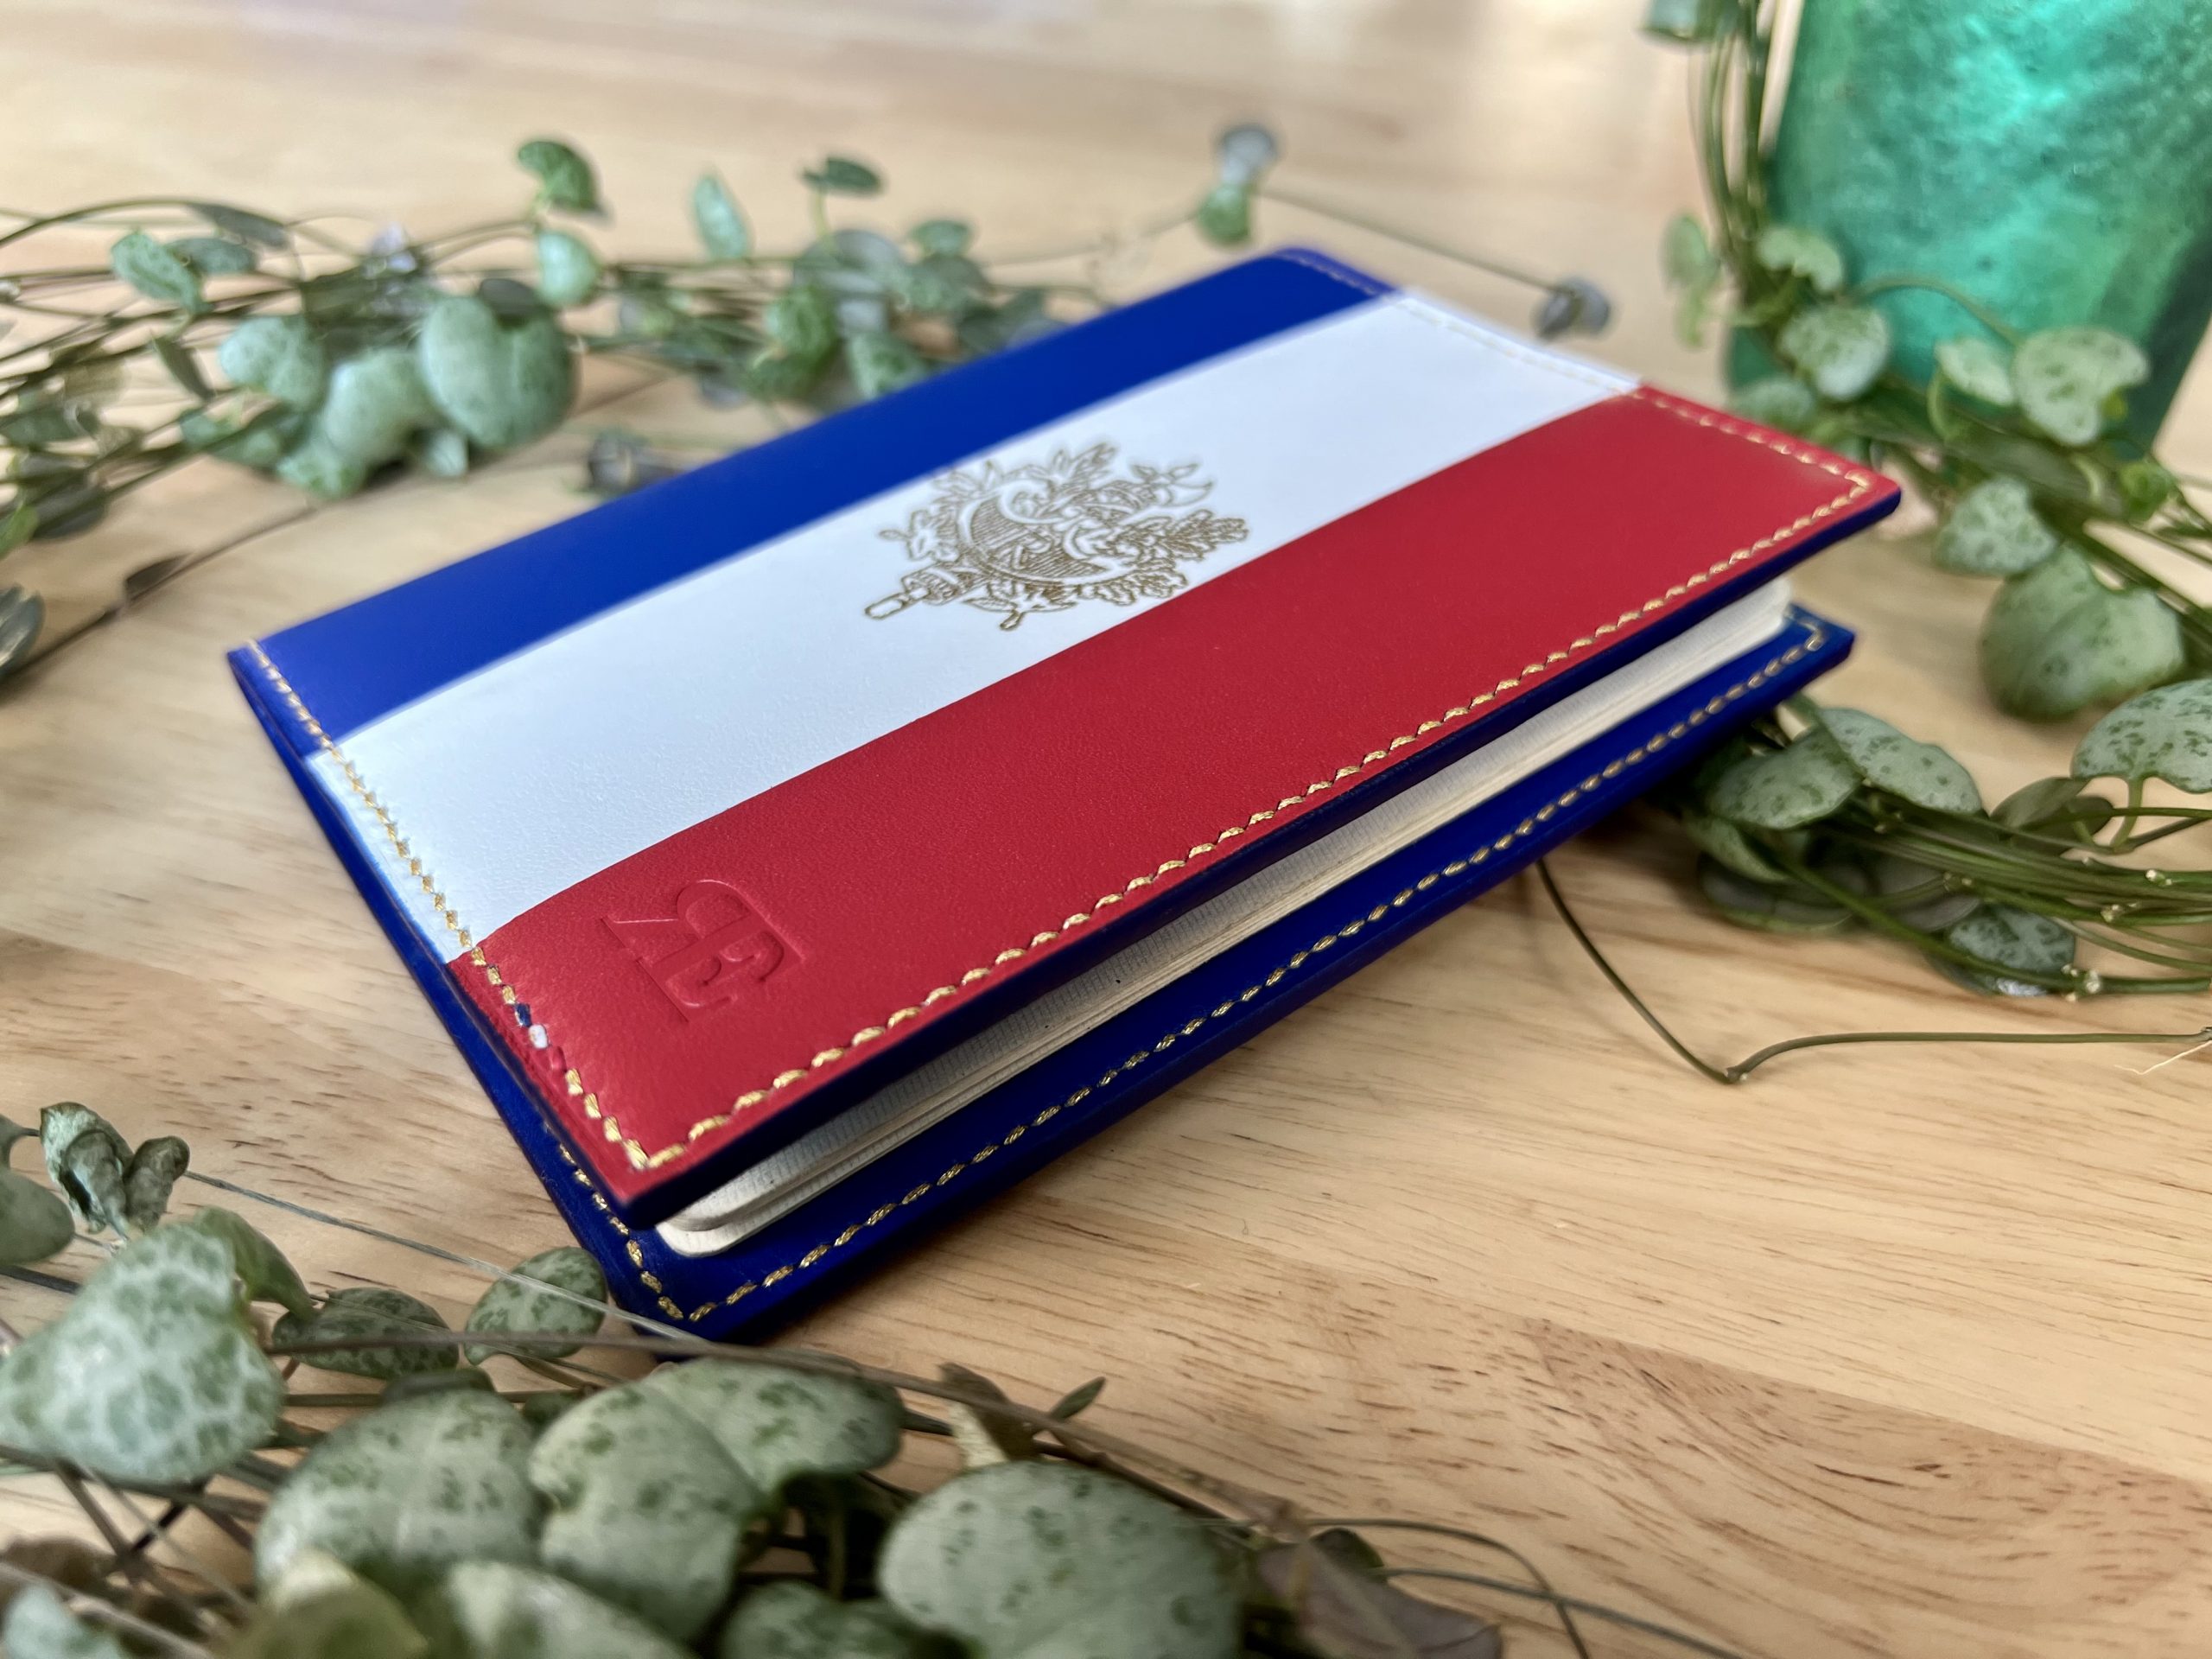 Protège passeport bleu blanc rouge et estampe dorée avec vue sur le tranche